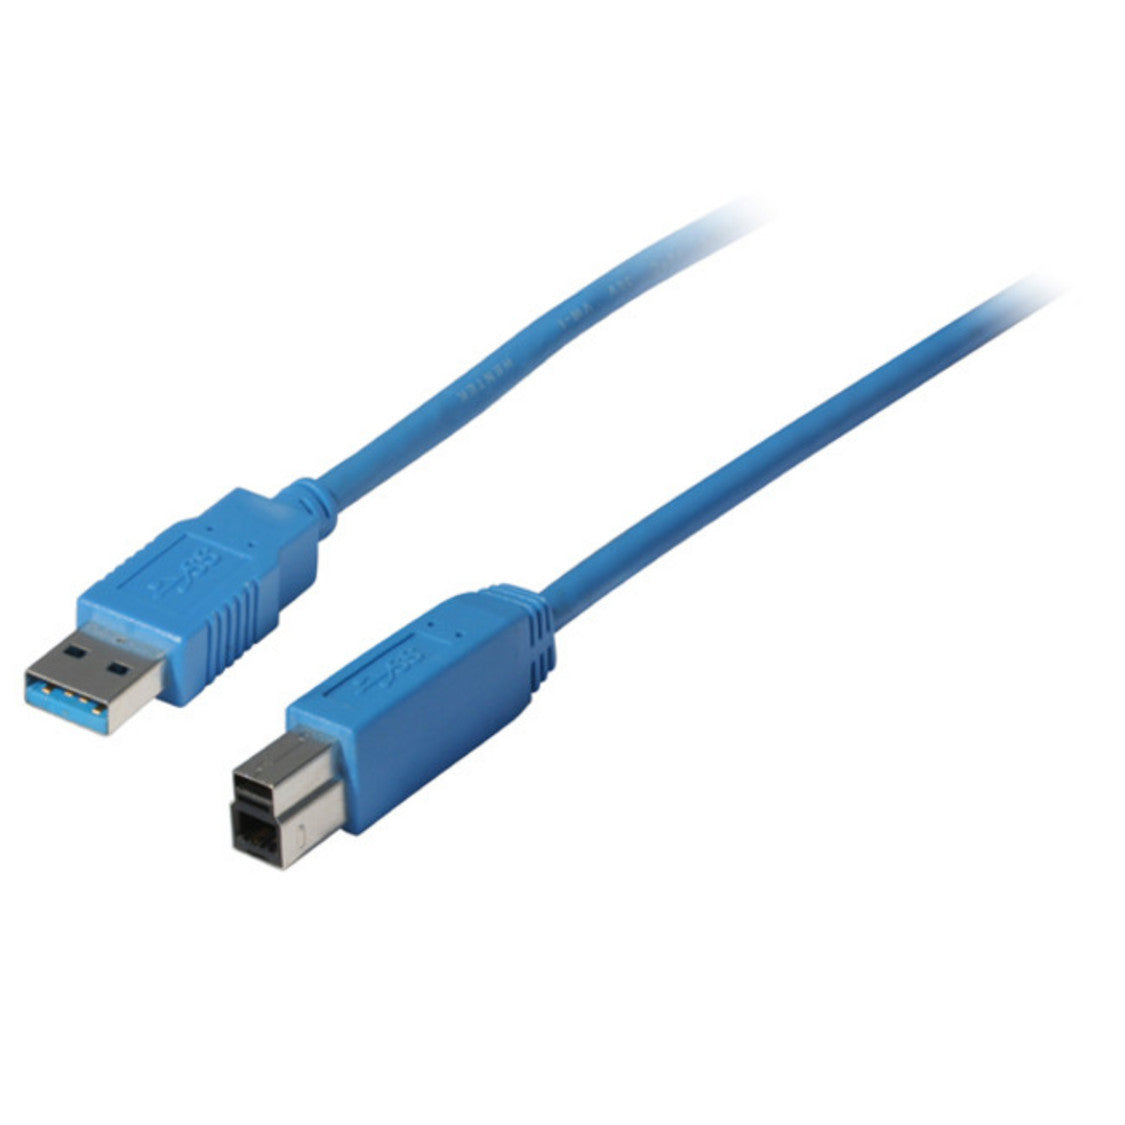 USB Kabel, Typ A Stecker auf Typ B Stecker, USB 3.0